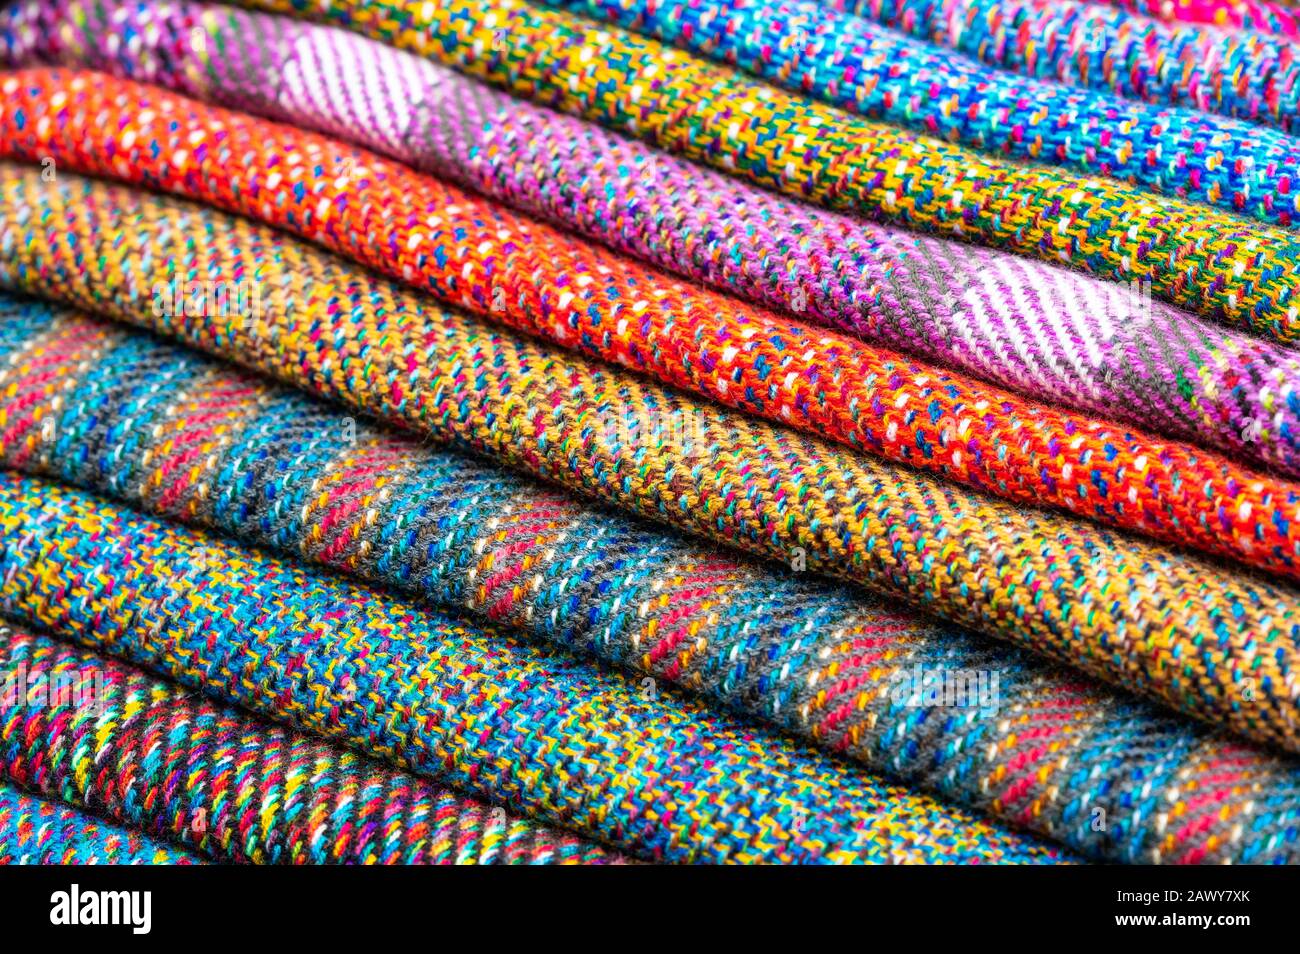 Ein Haufen bunter traditioneller Anden-Textilien auf dem lokalen indigenen Markt Otavalo, Ecuador. Diese Art von Stoffen findet man in Bolivien und Peru. Stockfoto